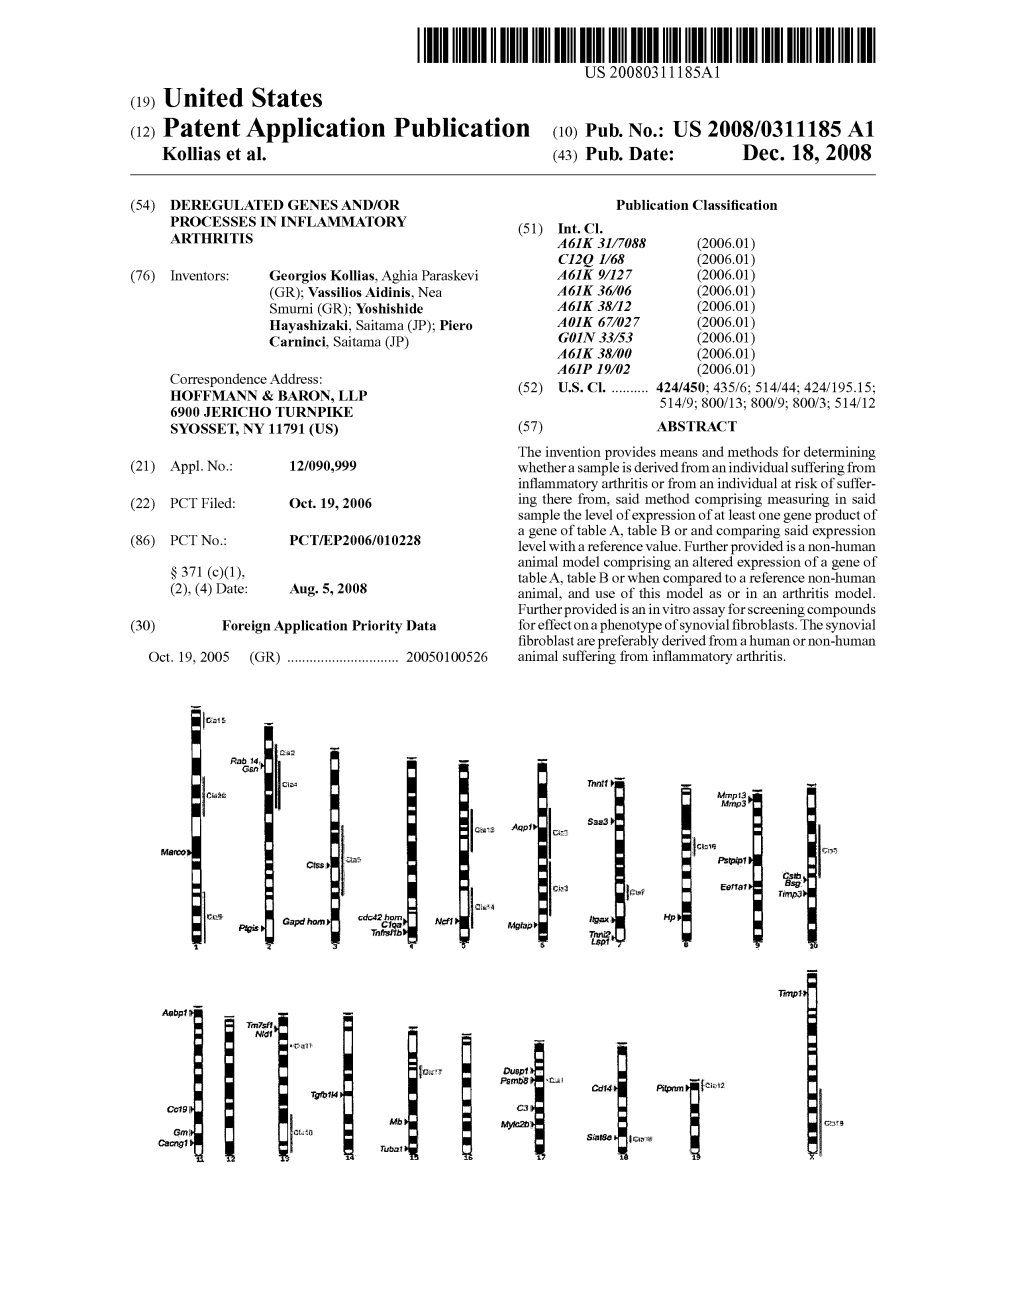 (12) Patent Application Publication (10) Pub. No.: US 2008/0311185 A1 Kollias Et Al